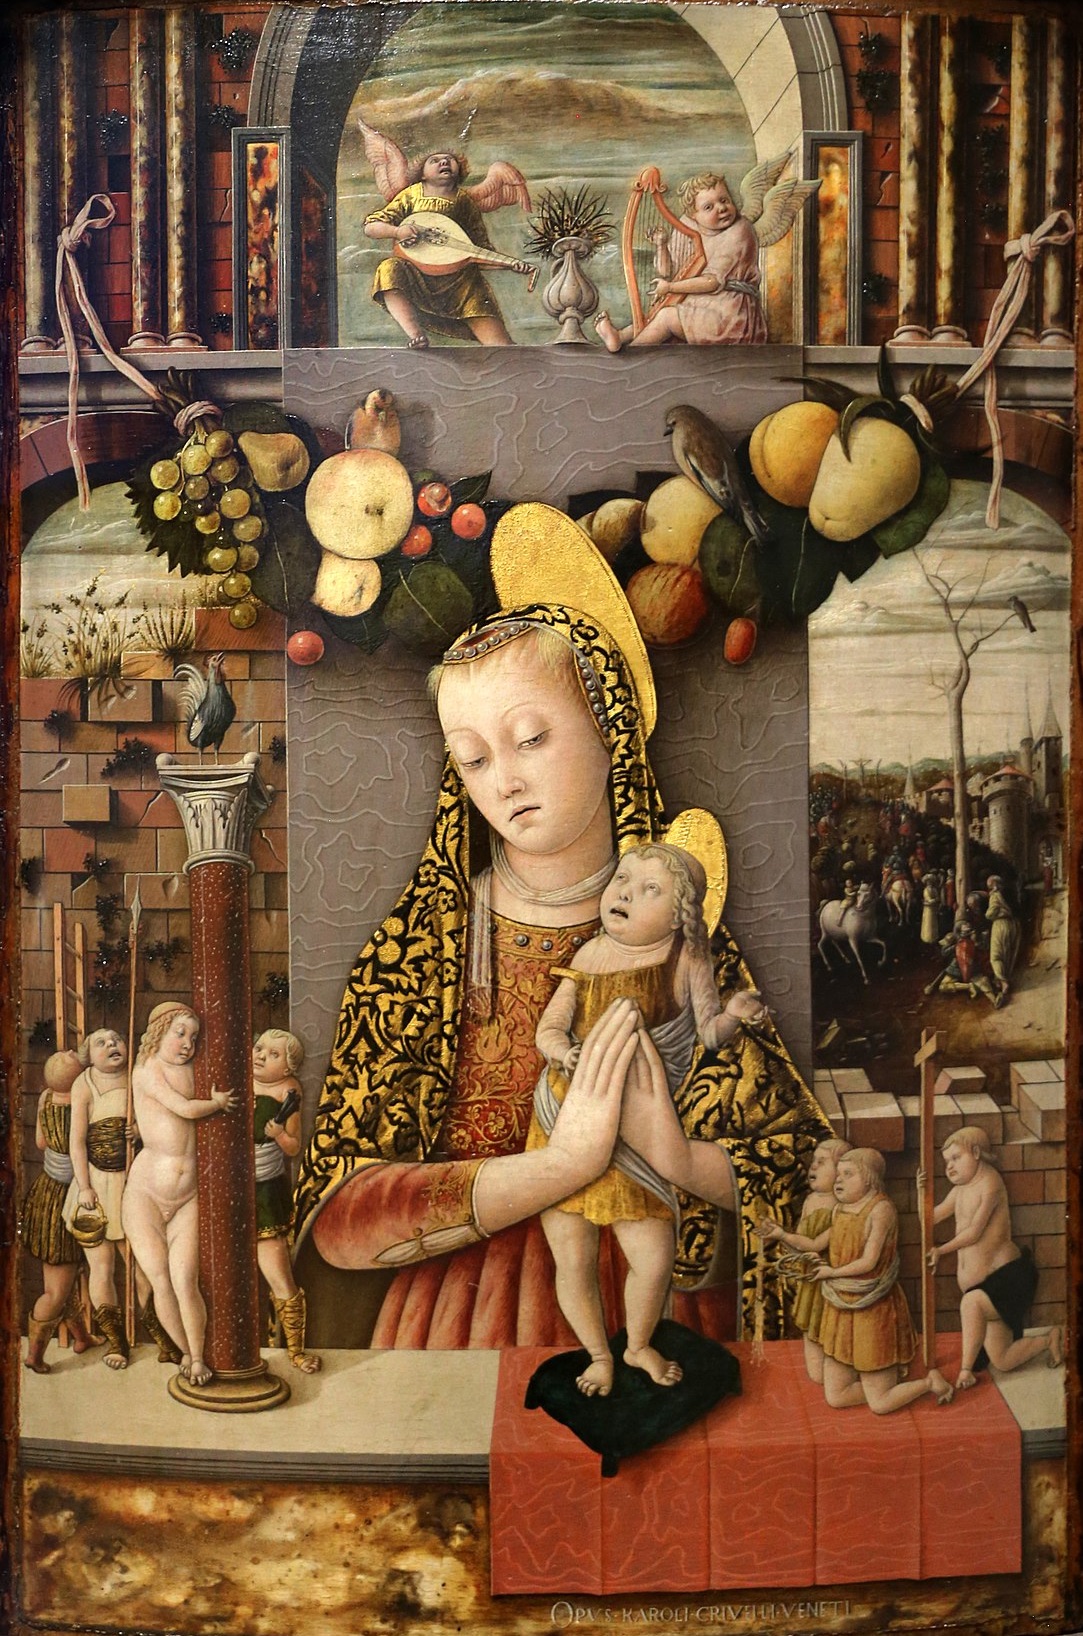 Madonna der Passion by Carlo Crivelli - 1455 - 1459 - 71 x 48 cm Museo di Castelvecchio